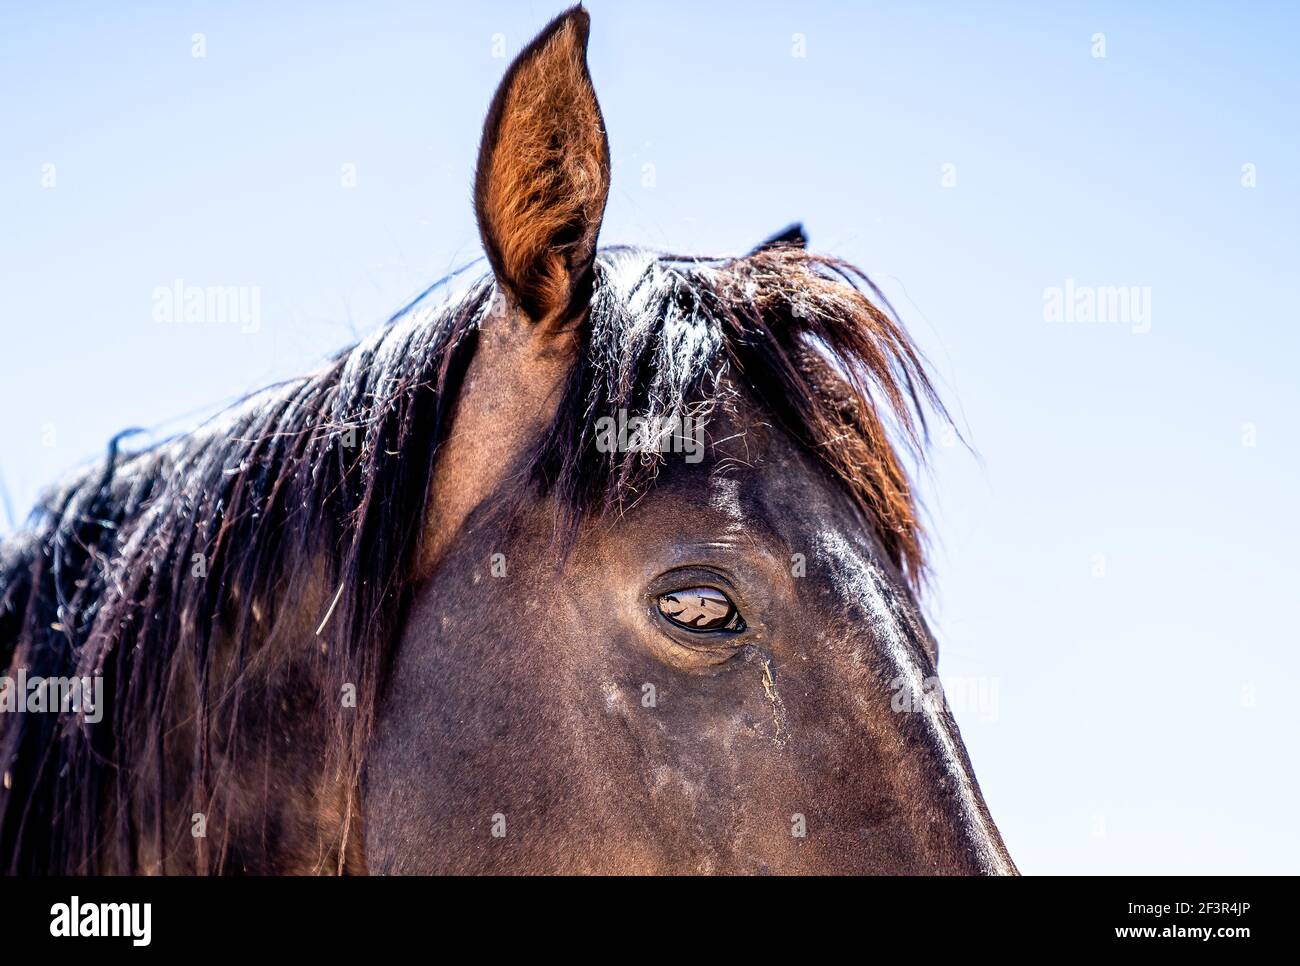 A Wild horse of Garub, near the namib desert in namibia Stock Photo